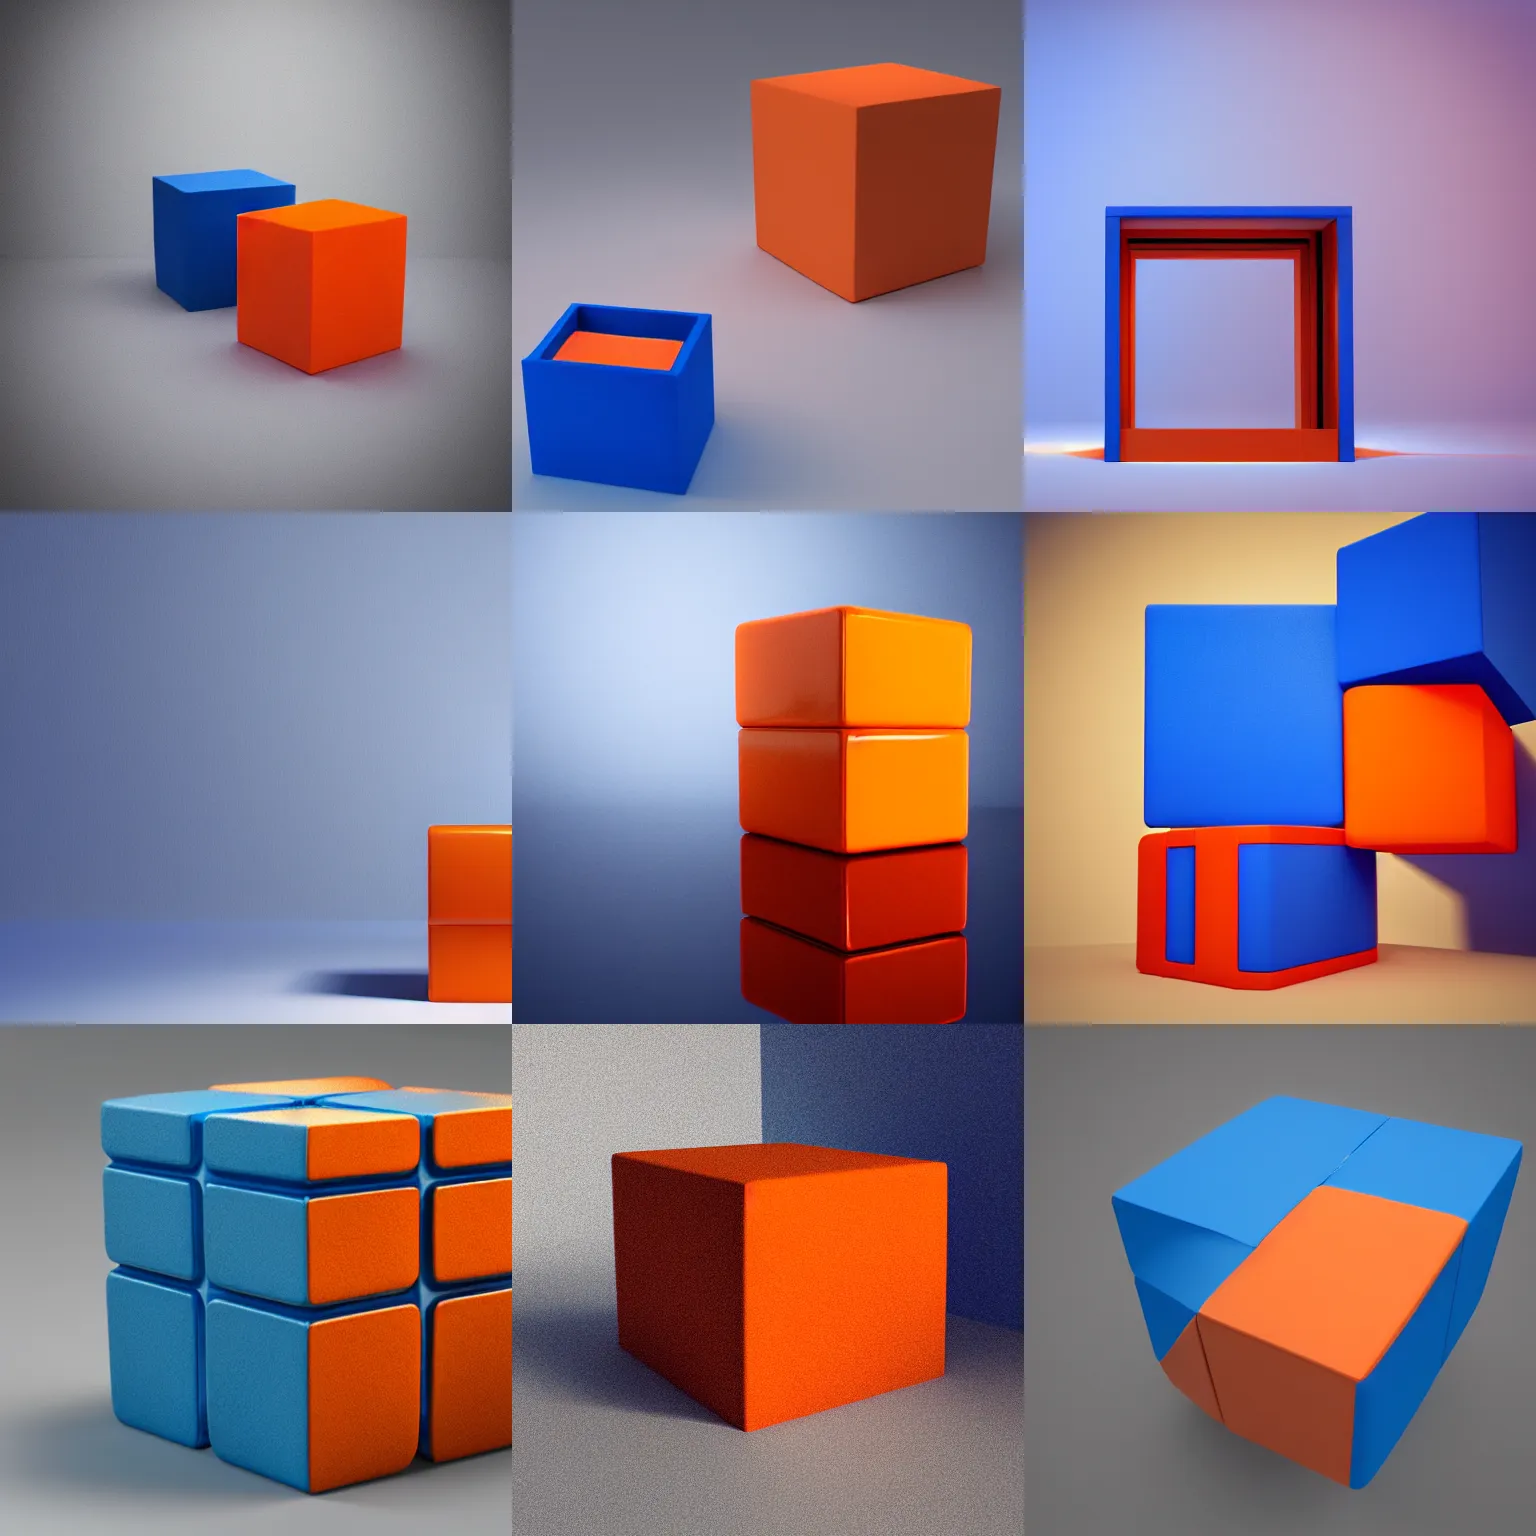 Image similar to one blue cube and one orange cube, 3 3 8 8, studio light, studio photo, 7 9 9 7, octane render